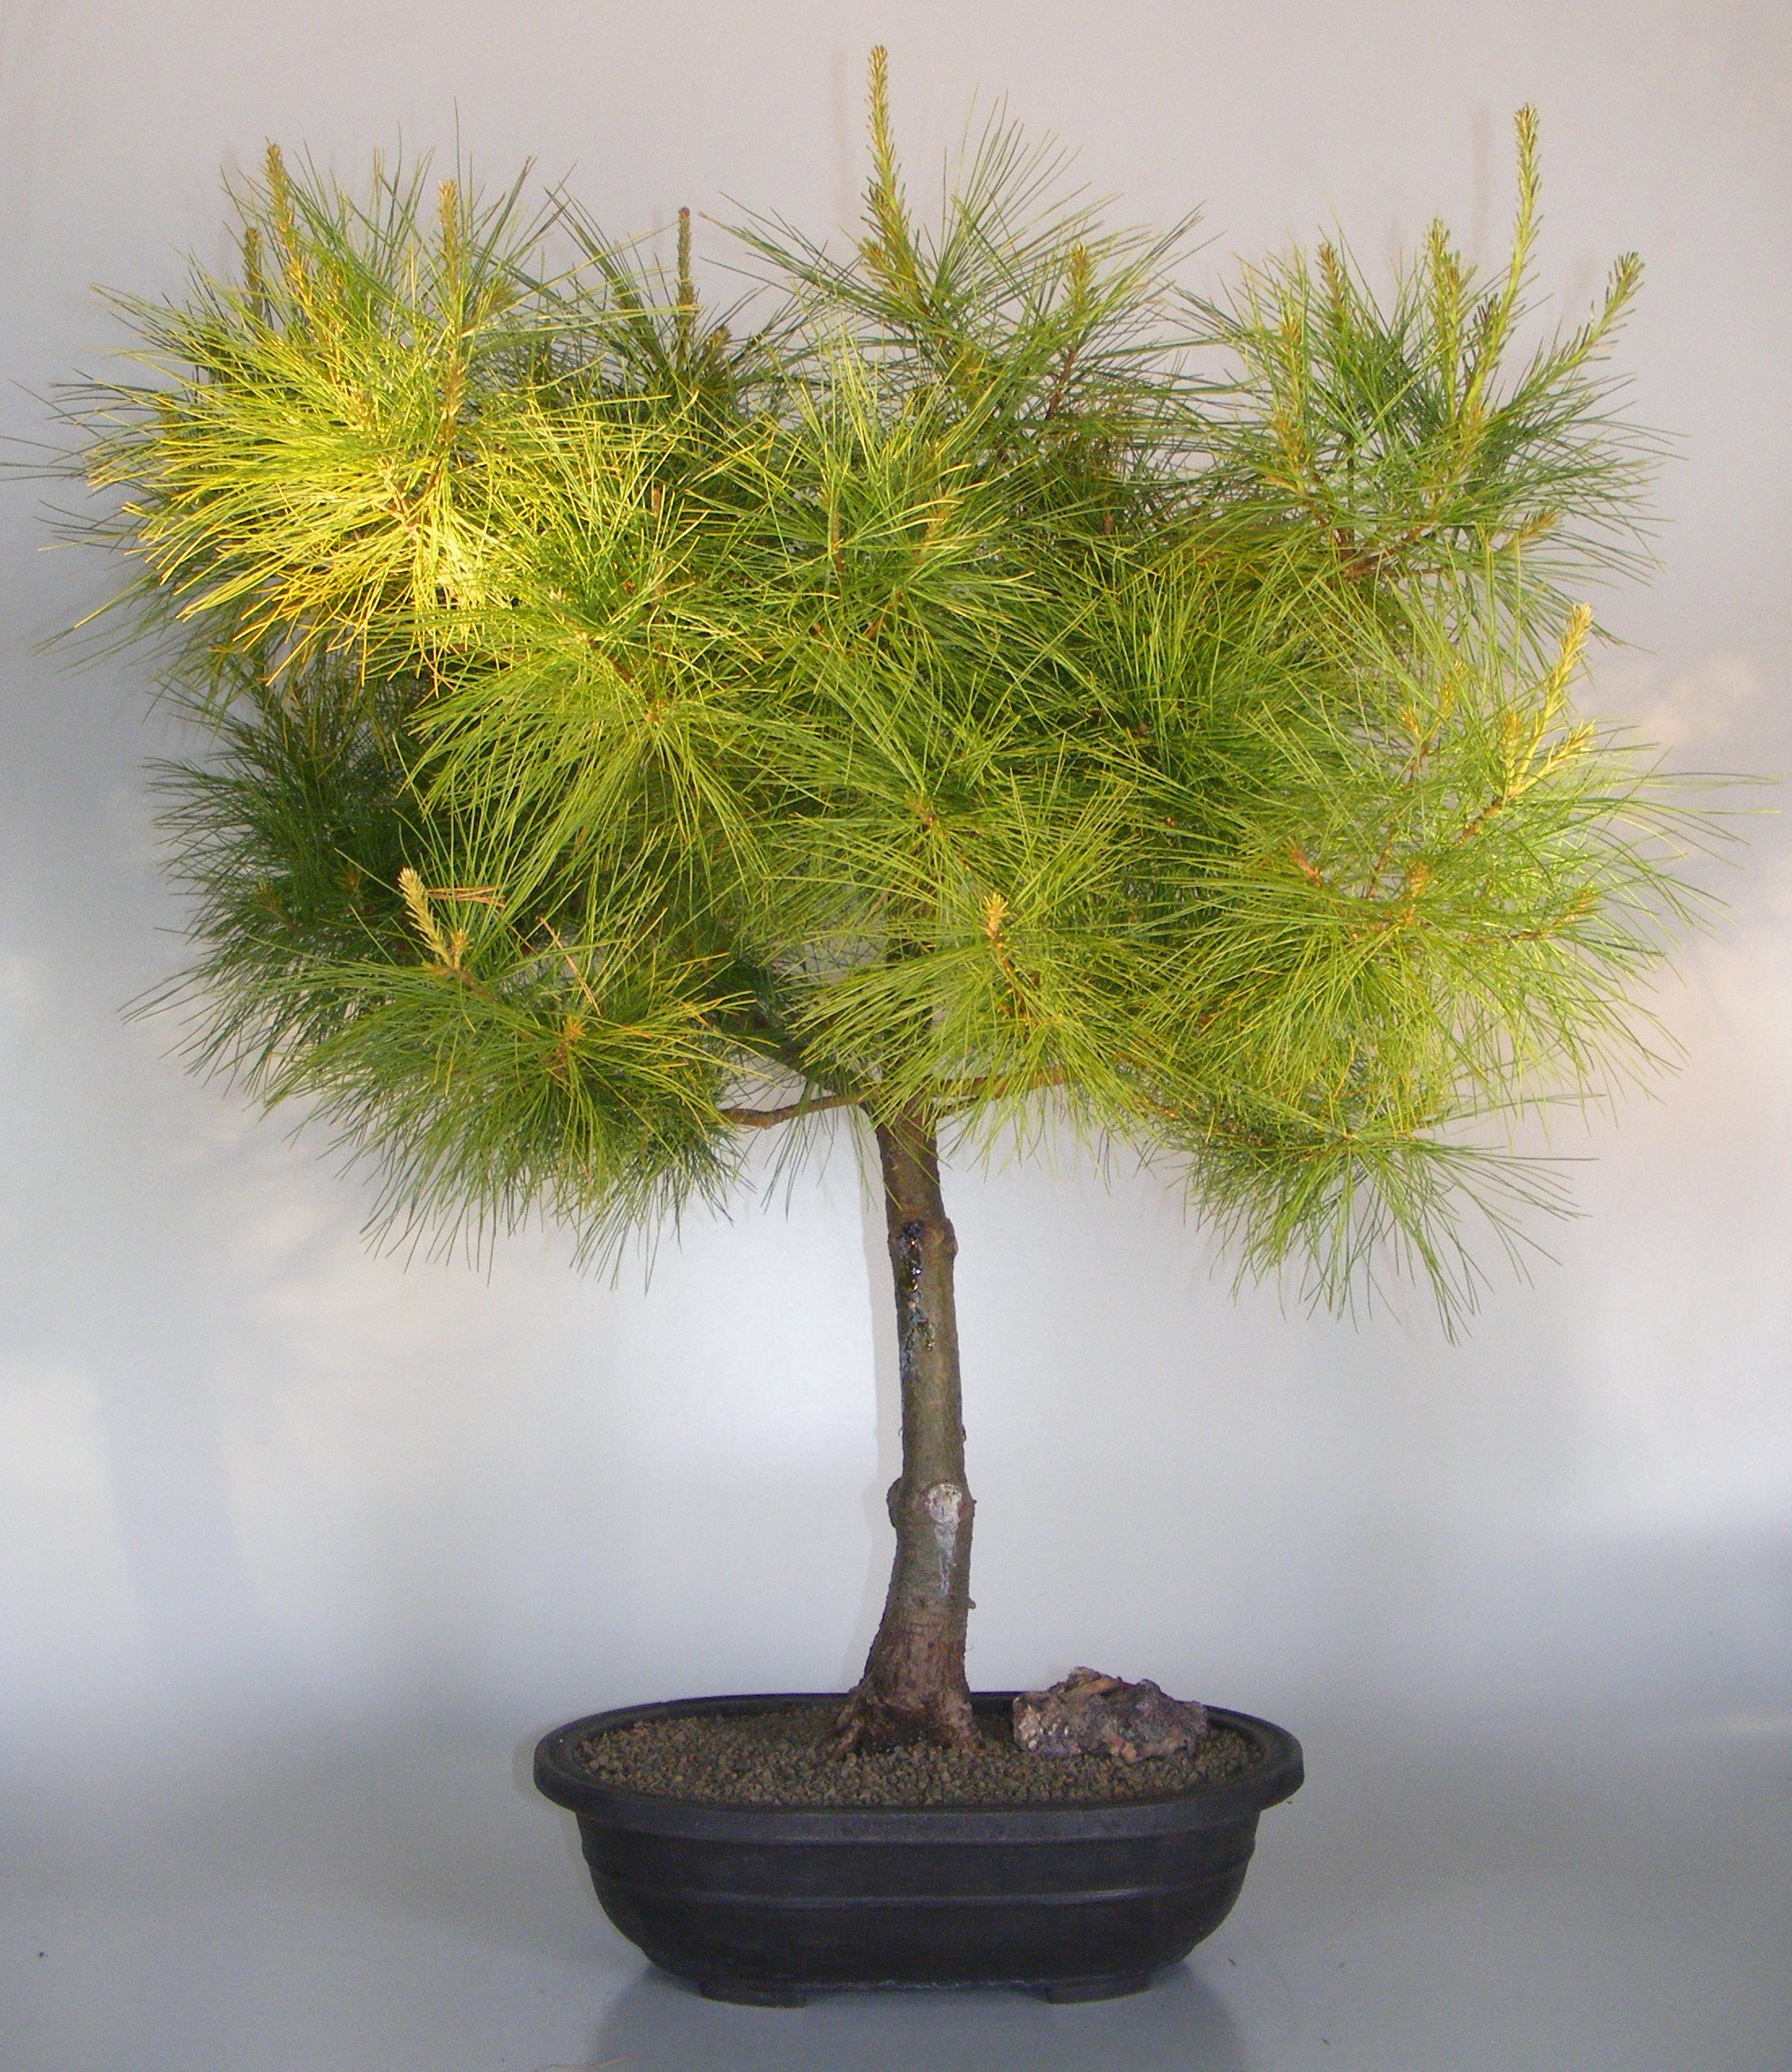 Japanese White Pine Bonsai Tree(pinus parviflora) Image